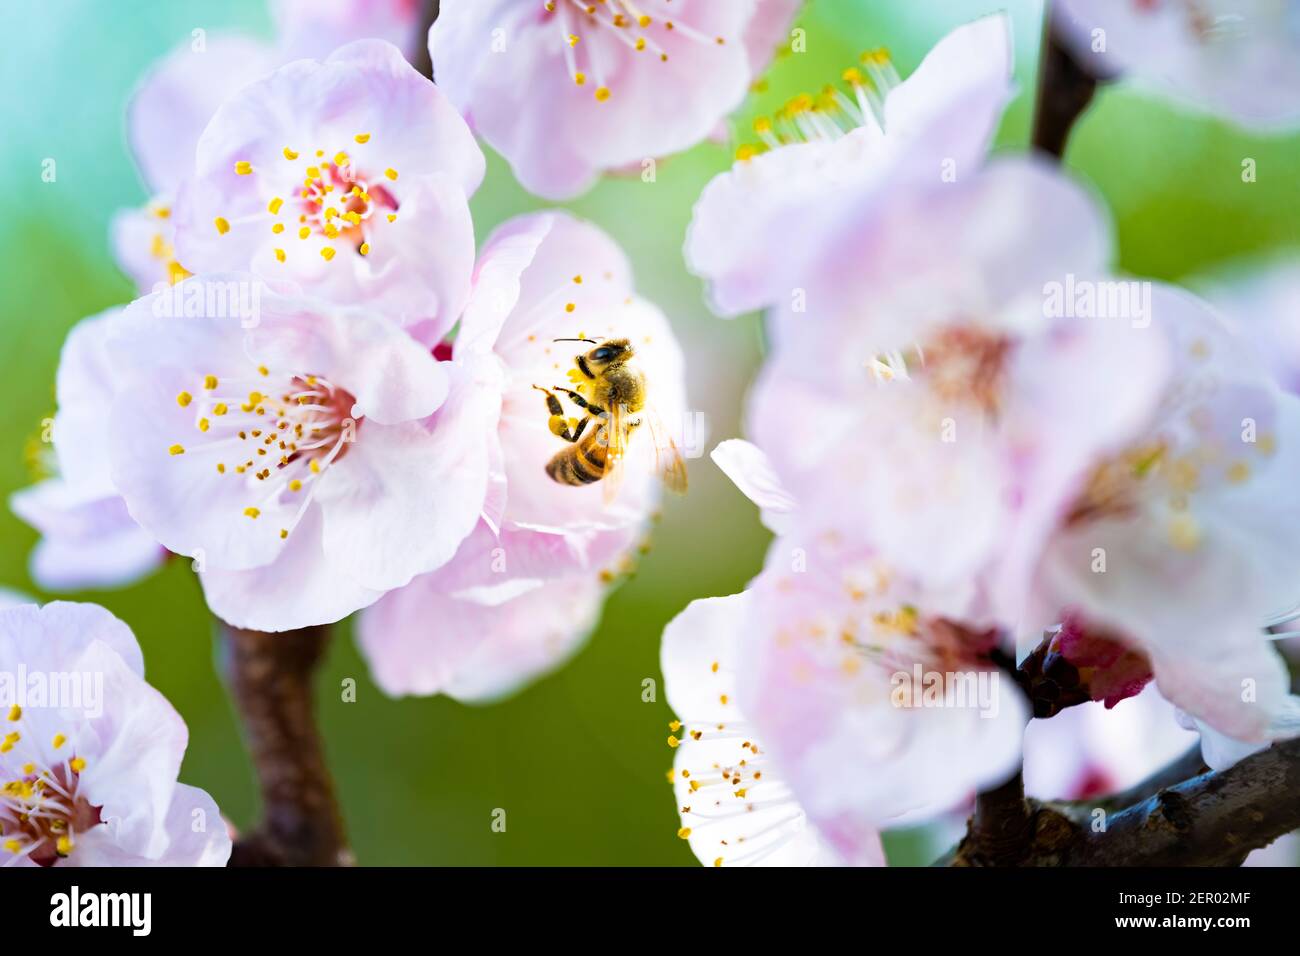 (Selektiver Fokus) Nahaufnahme einer Biene, die während der Blütezeit Nektar von einigen Kirschblüten sammelt. Natürlicher Hintergrund mit Witz Stockfoto